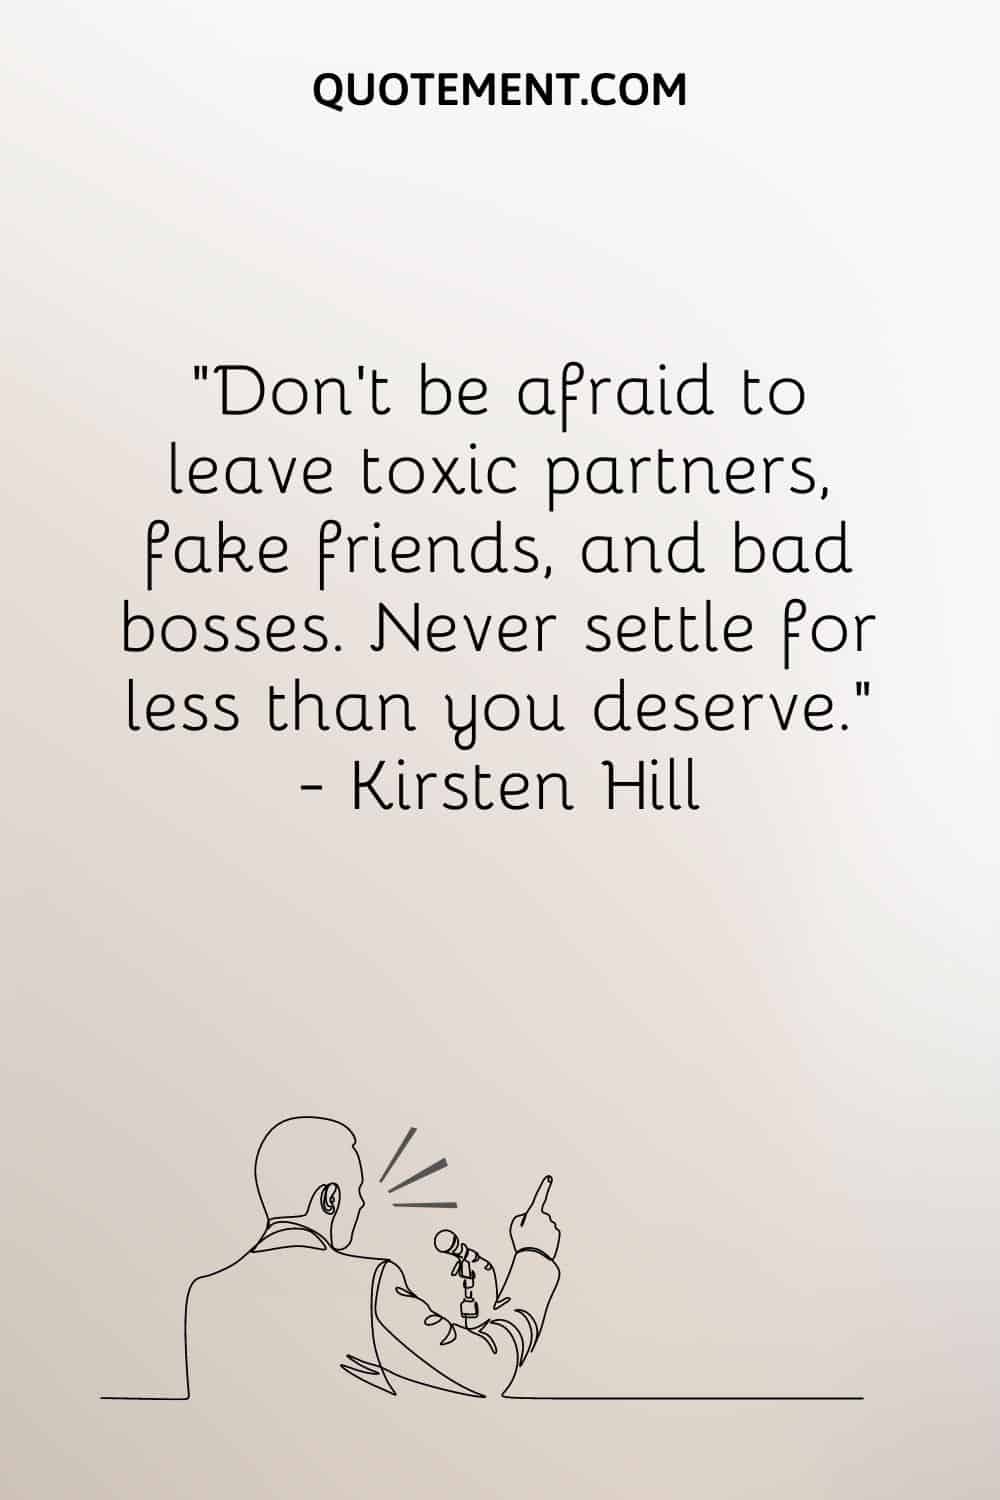 No tengas miedo de dejar a parejas tóxicas, amigos falsos y malos jefes